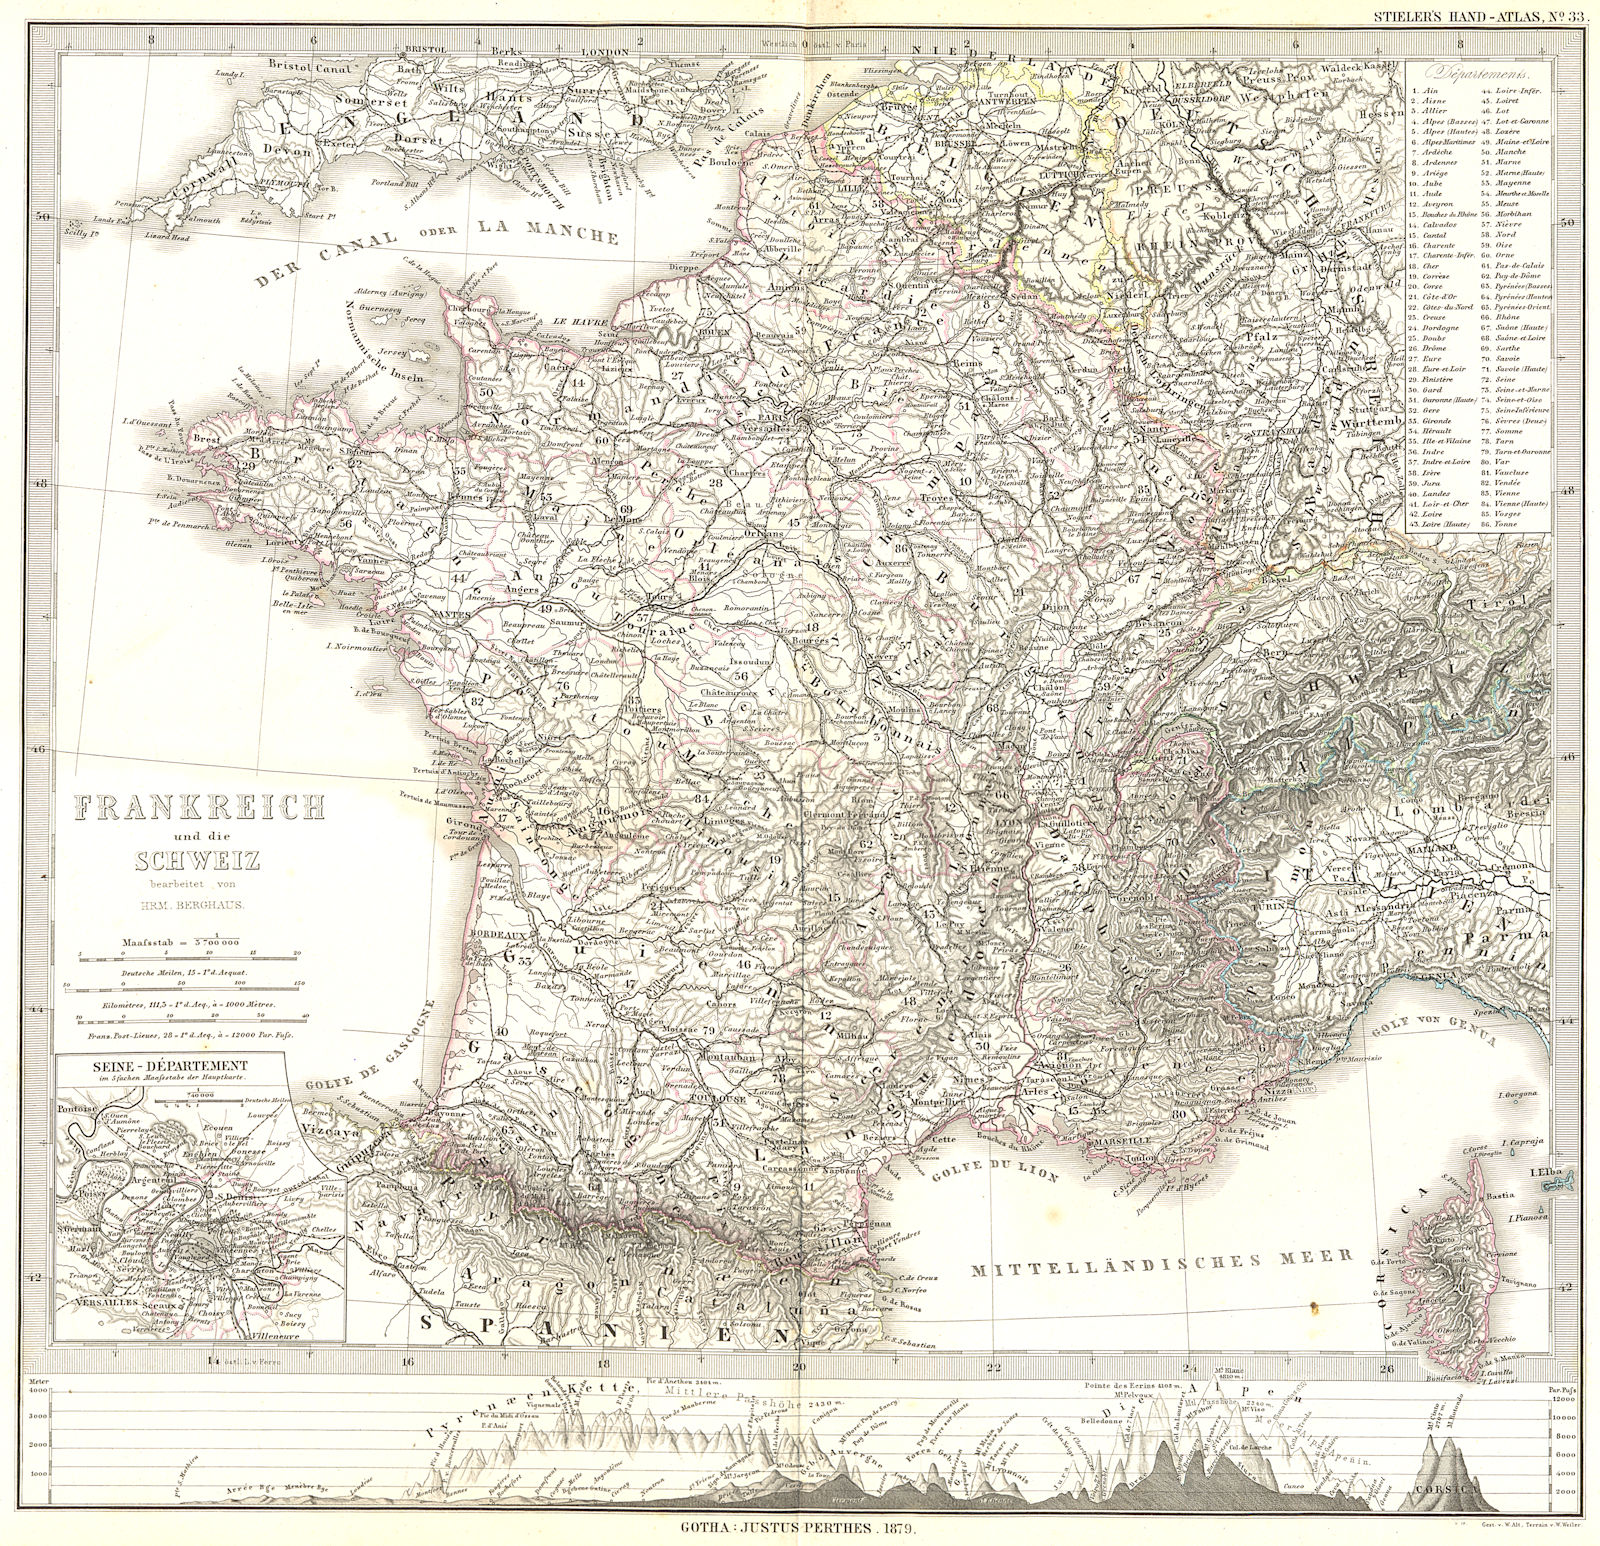 FRANKREICH. France Schweiz; Seine Departement 1879 old antique map plan chart